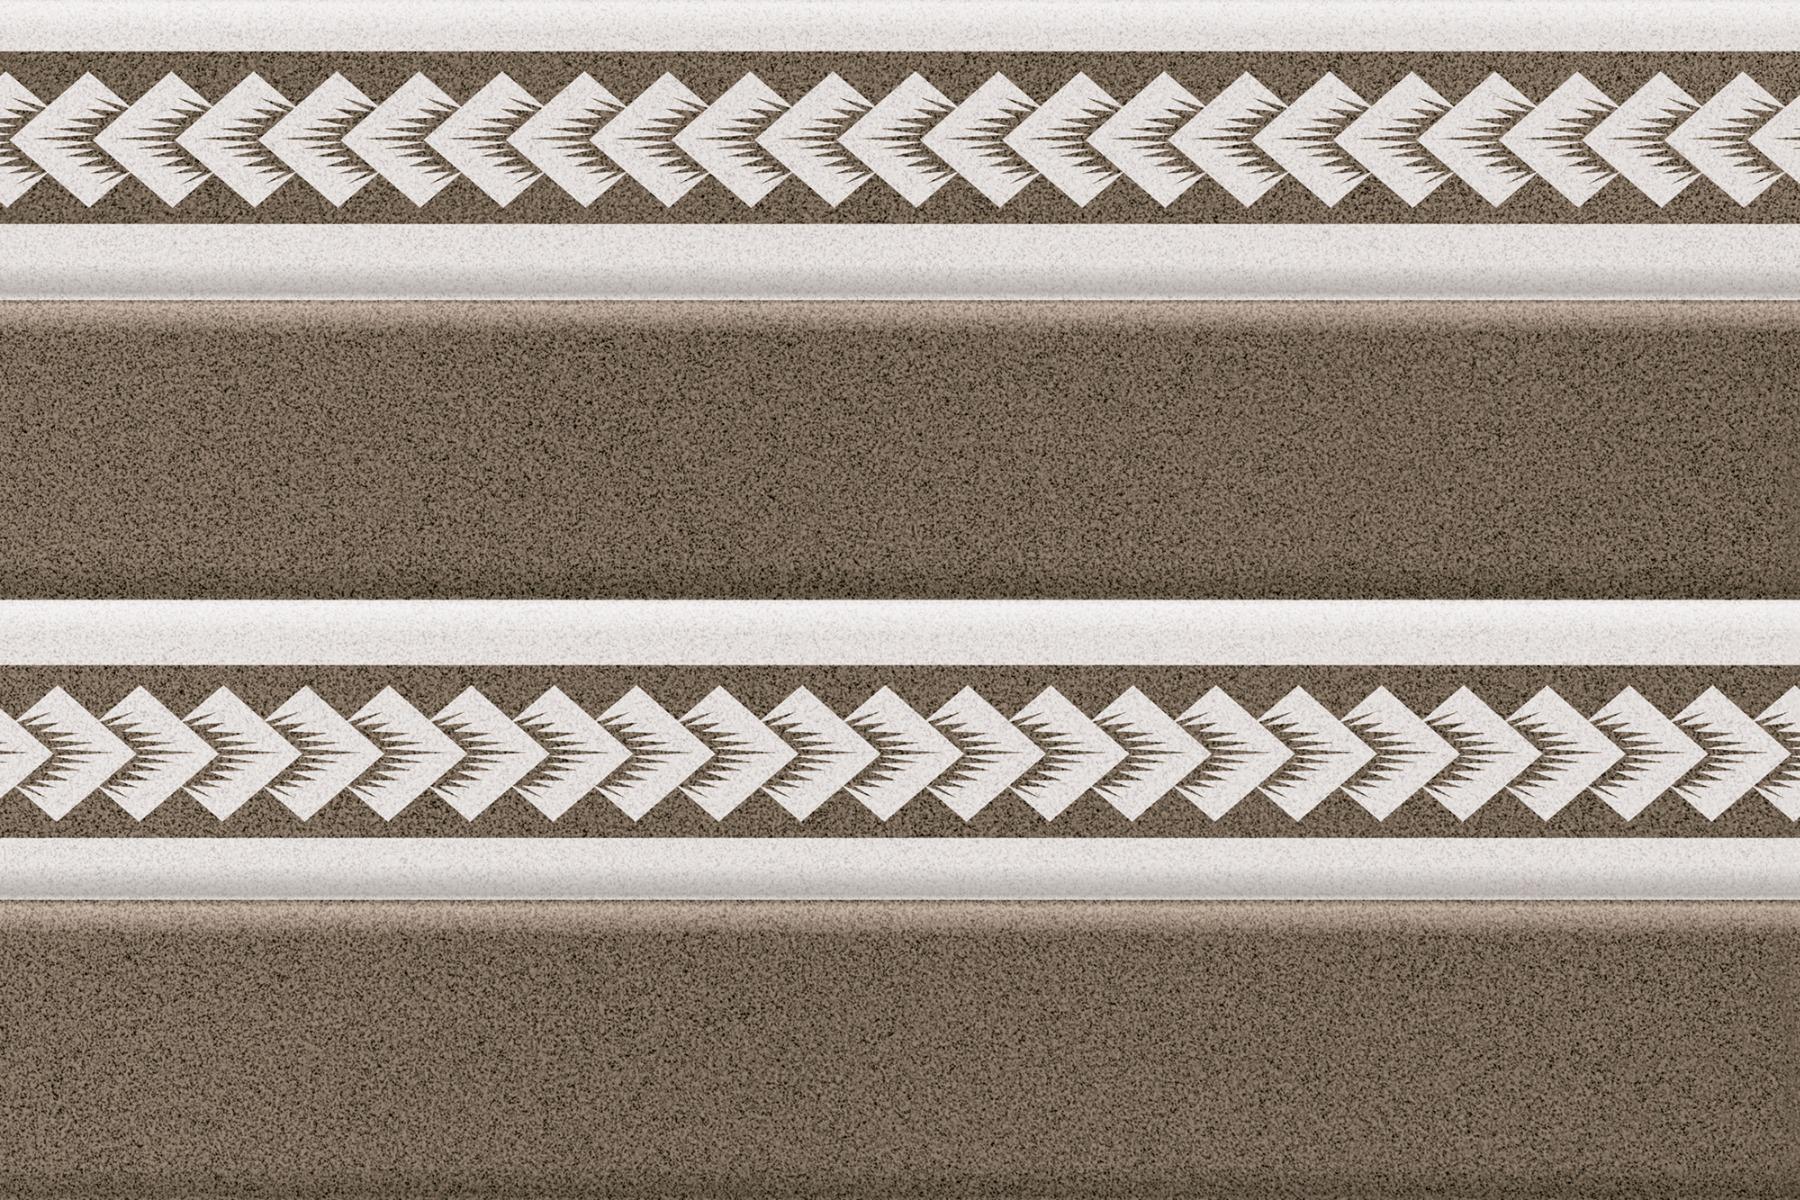 Ceramic Tiles for Bathroom Tiles, Kitchen Tiles, Balcony Tiles